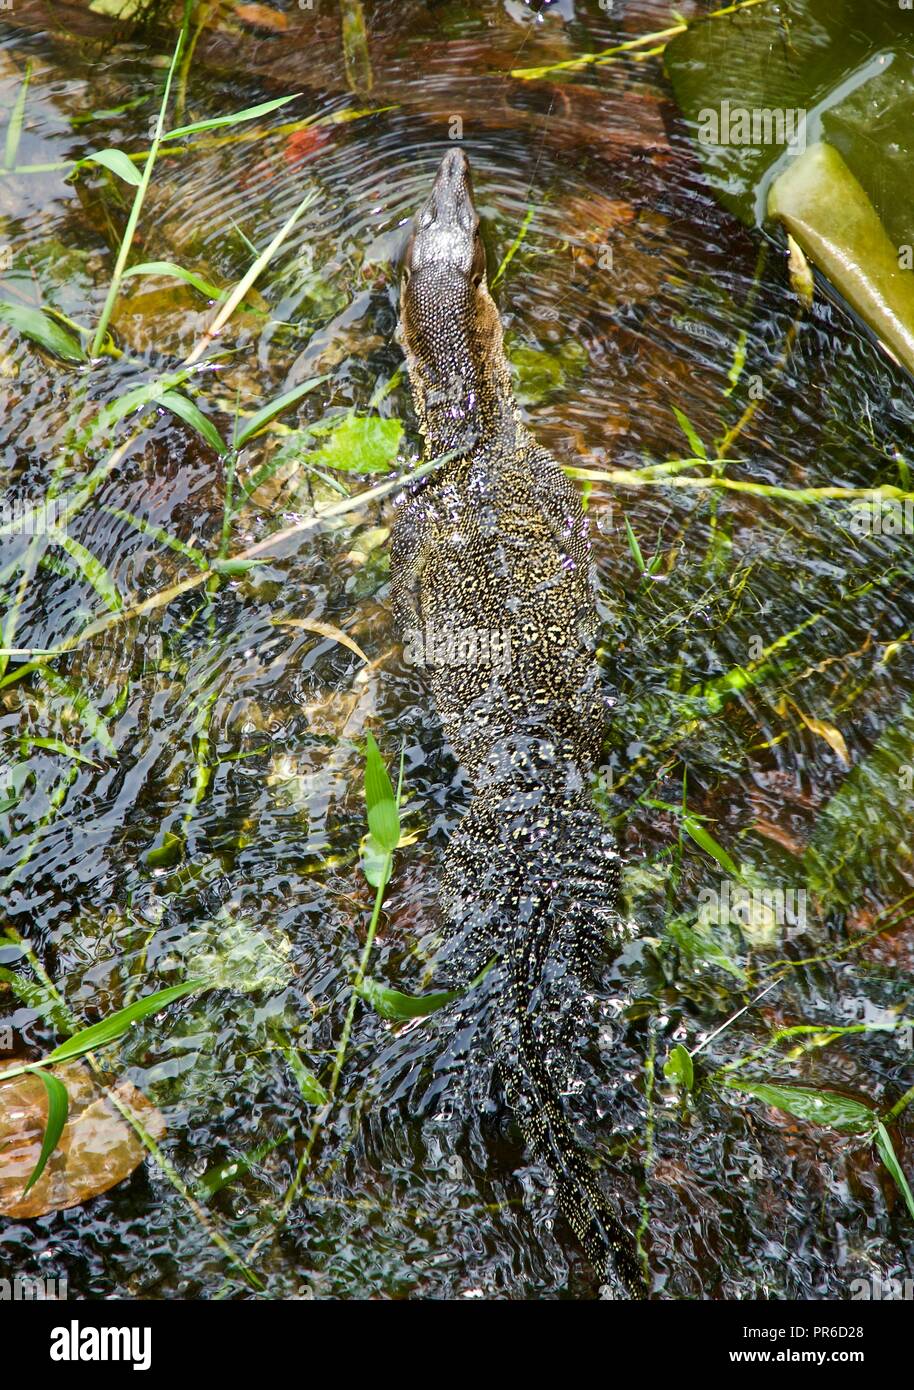 El lagarto monitor de la isla de Tioman Foto de stock